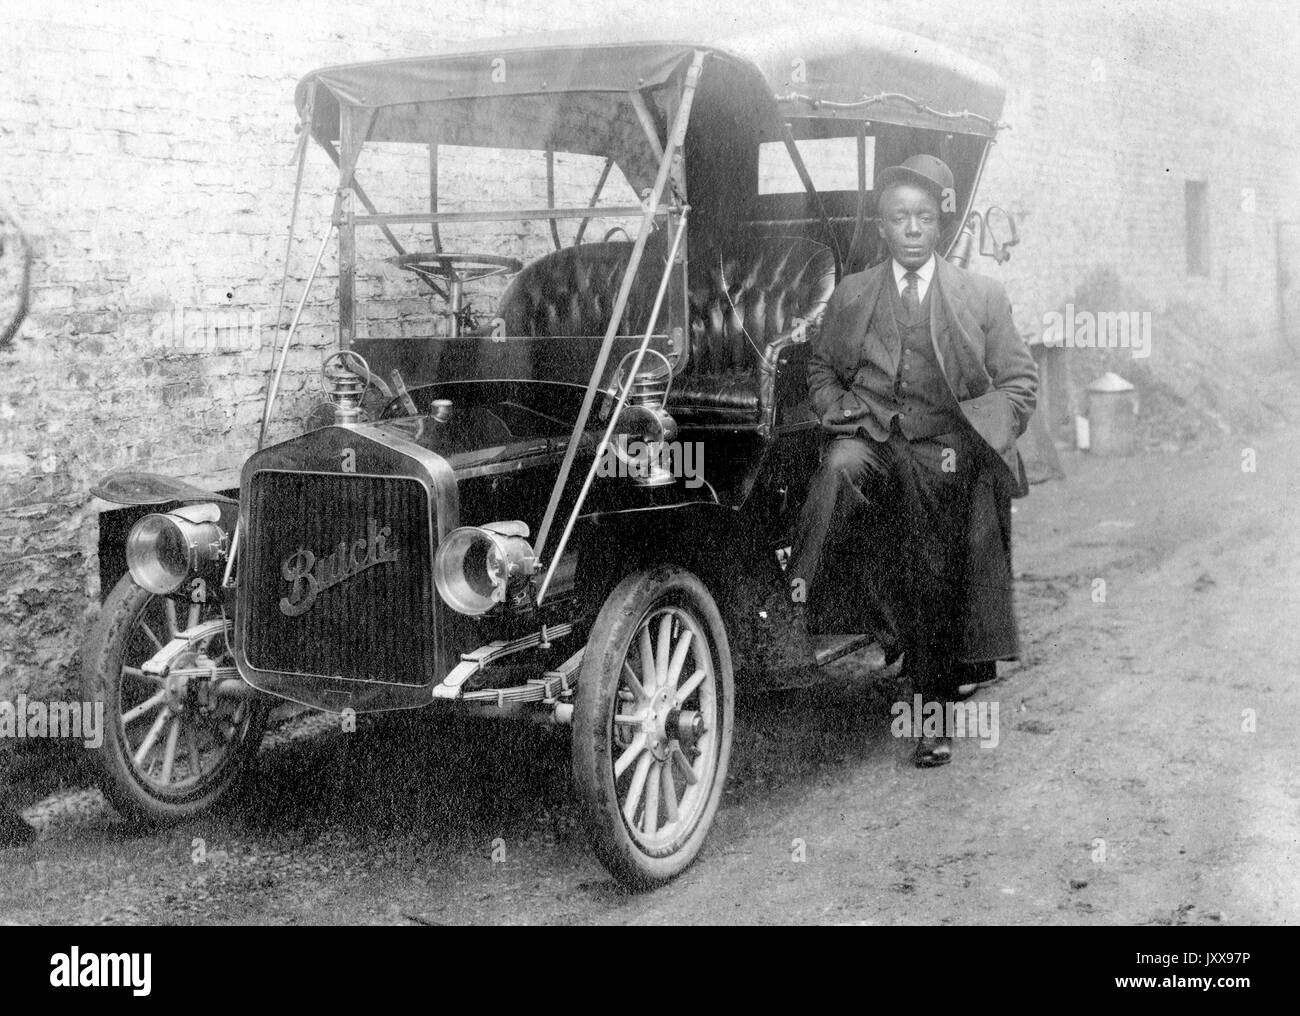 Ganzkörperaufnahme eines afroamerikanischen Mannes, der sich gegen ein Buick-Auto lehnt, das gegen ein Gebäude geparkt ist, einen Anzug und einen Hut trägt, der auf seinem Kopf geneigt ist, neutraler Gesichtsausdruck, 1920. Stockfoto